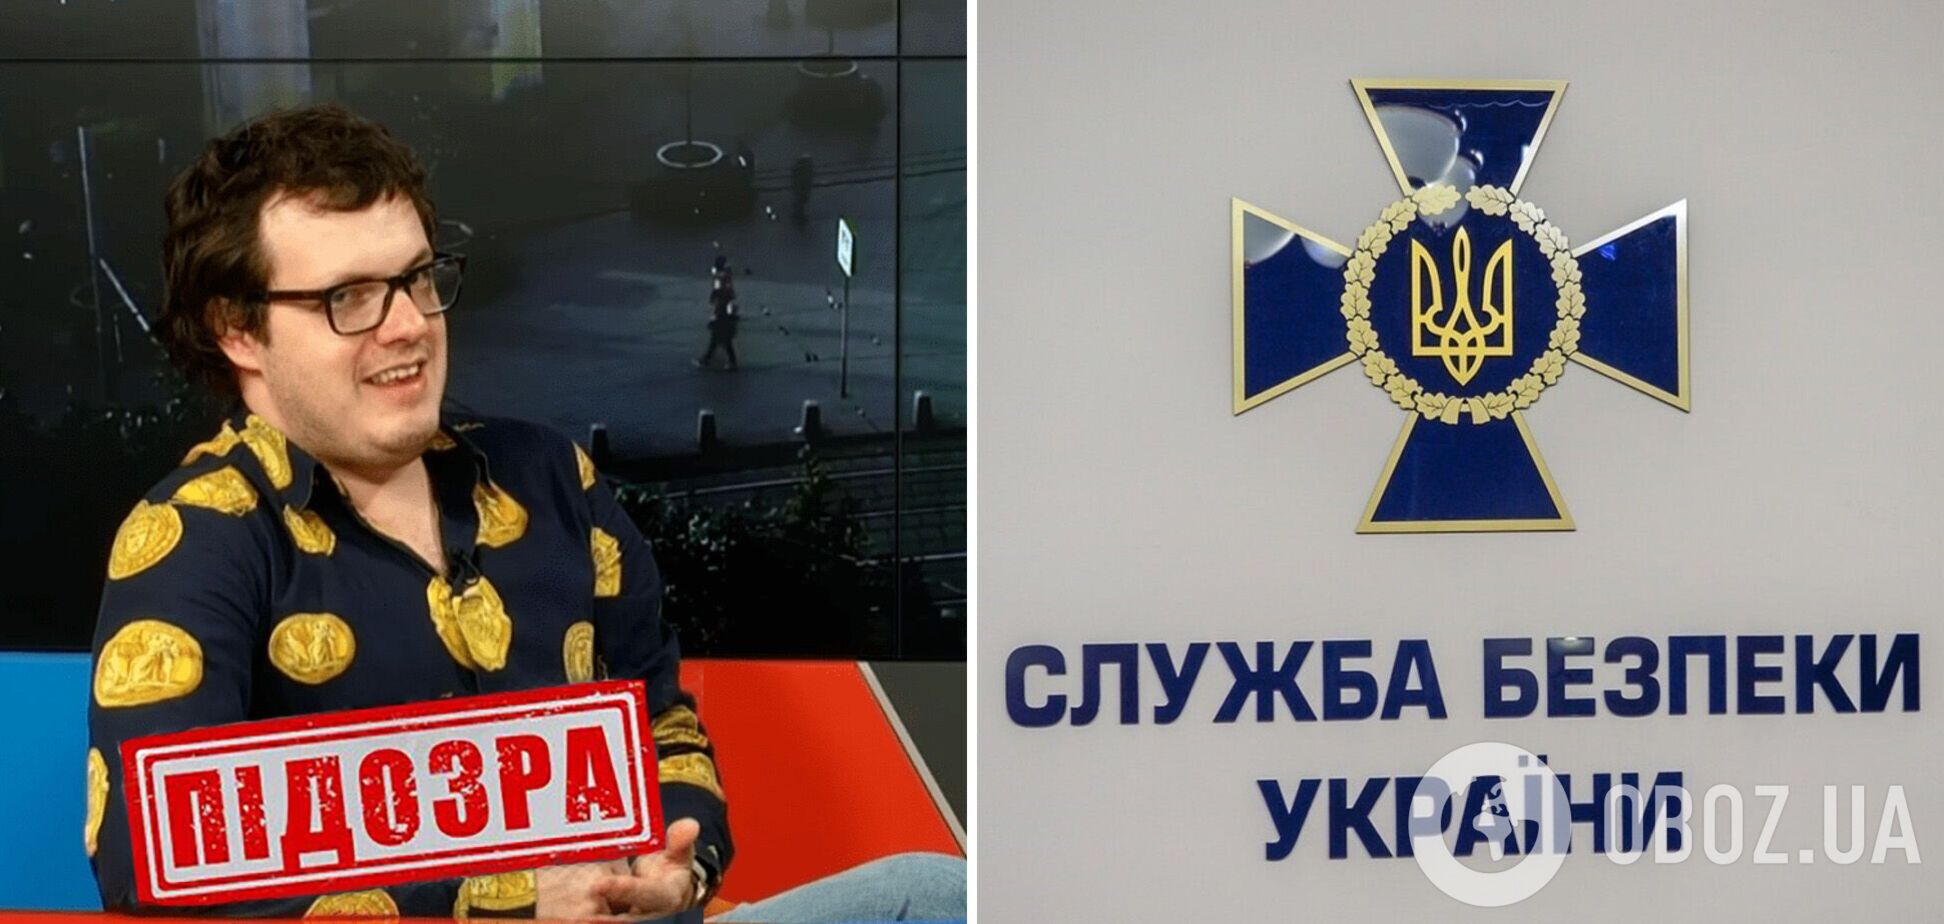 Участвовал в информоперациях врага: СБУ сообщила о подозрении в государственной измене 'политэксперту' из телеканалов Медведчука. Фото